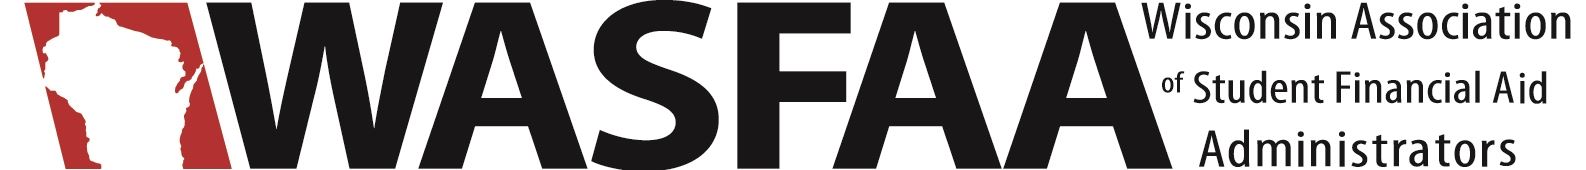 WASFAA Logo